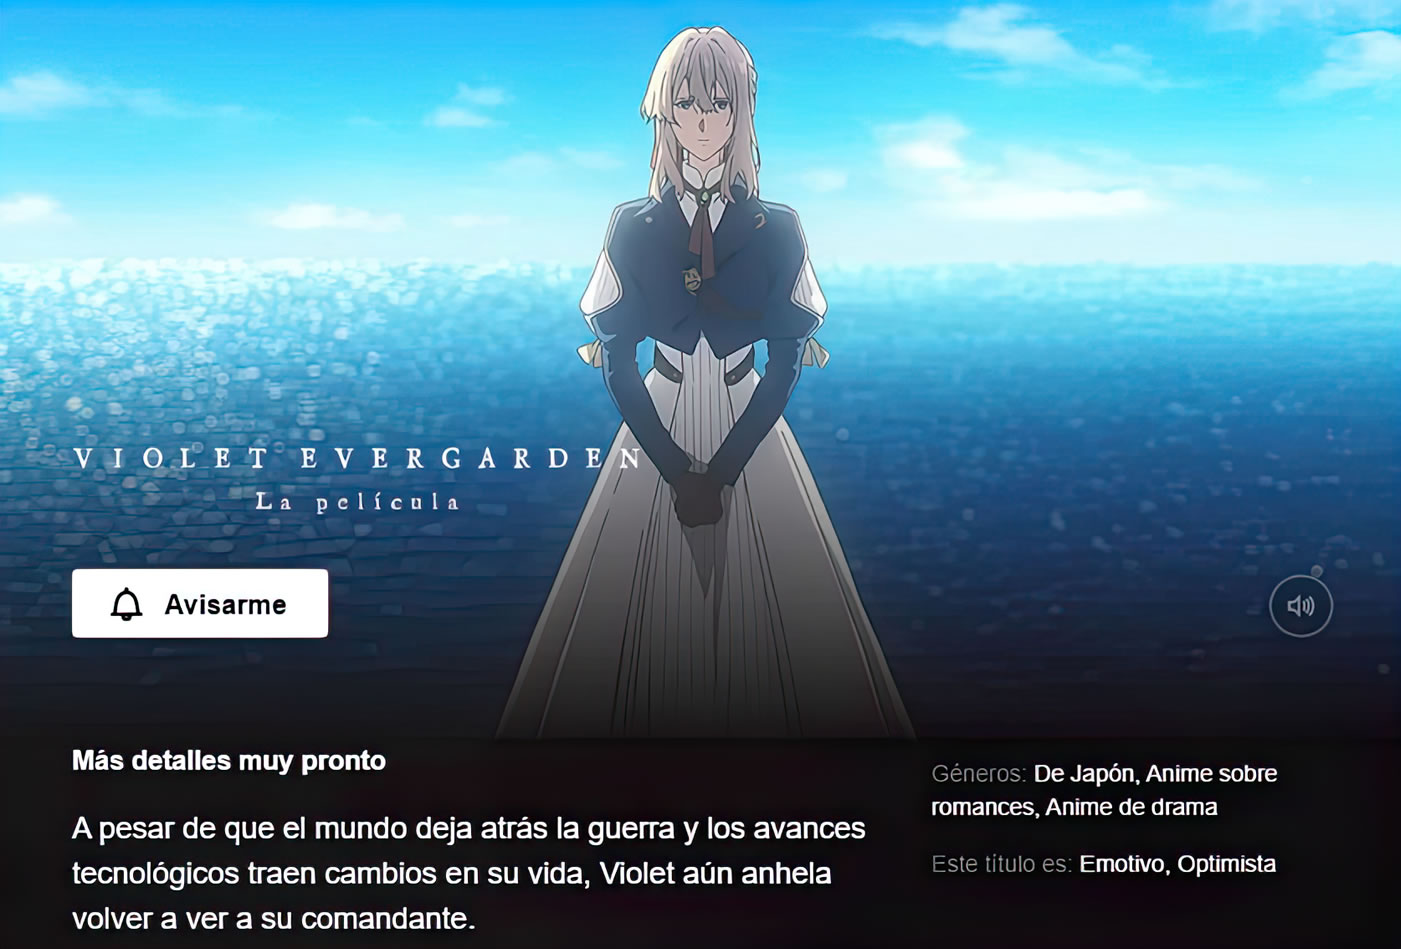 Guía de estrenos anime: ¡Violet Evergarden llega a los cines!